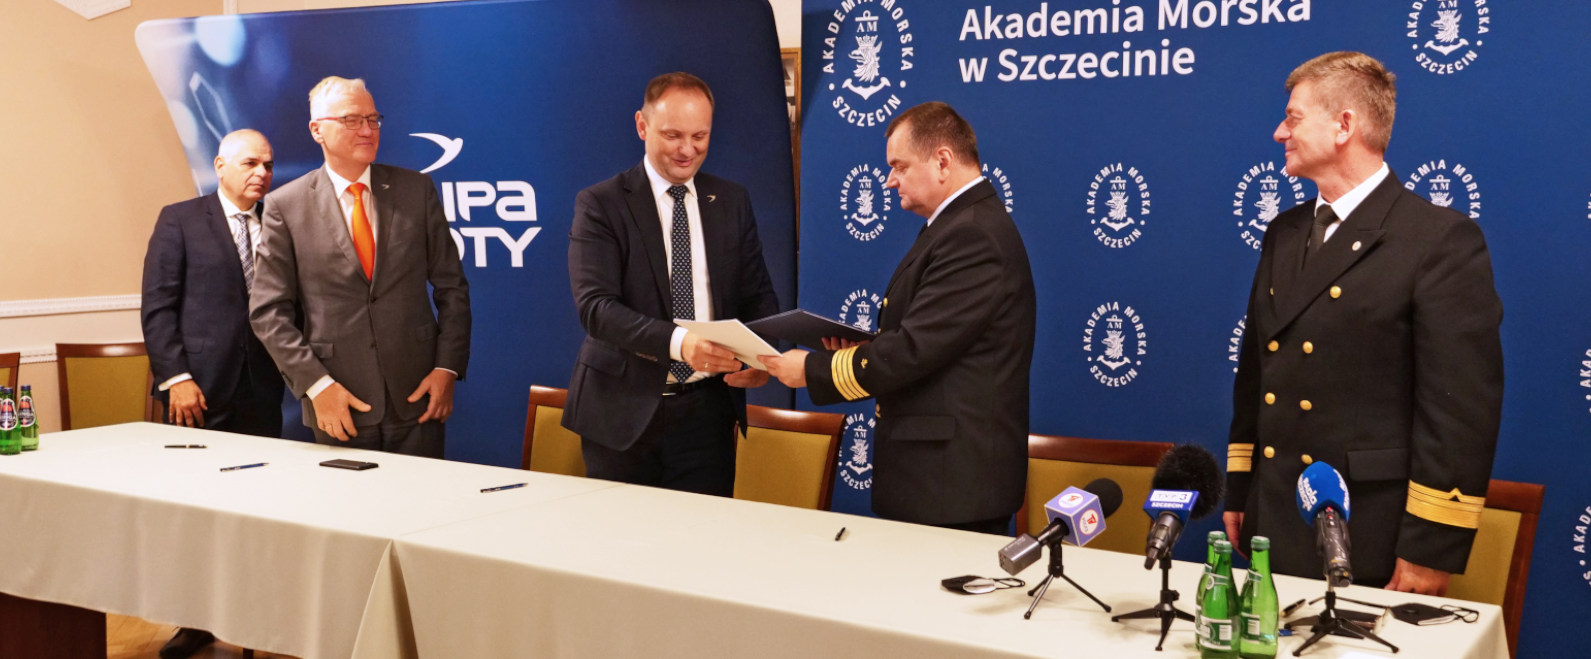 Porozumienie o wzajemnej współpracy pomiędzy spółkami Grupy Azoty a Akademią Morską w Szczecinie